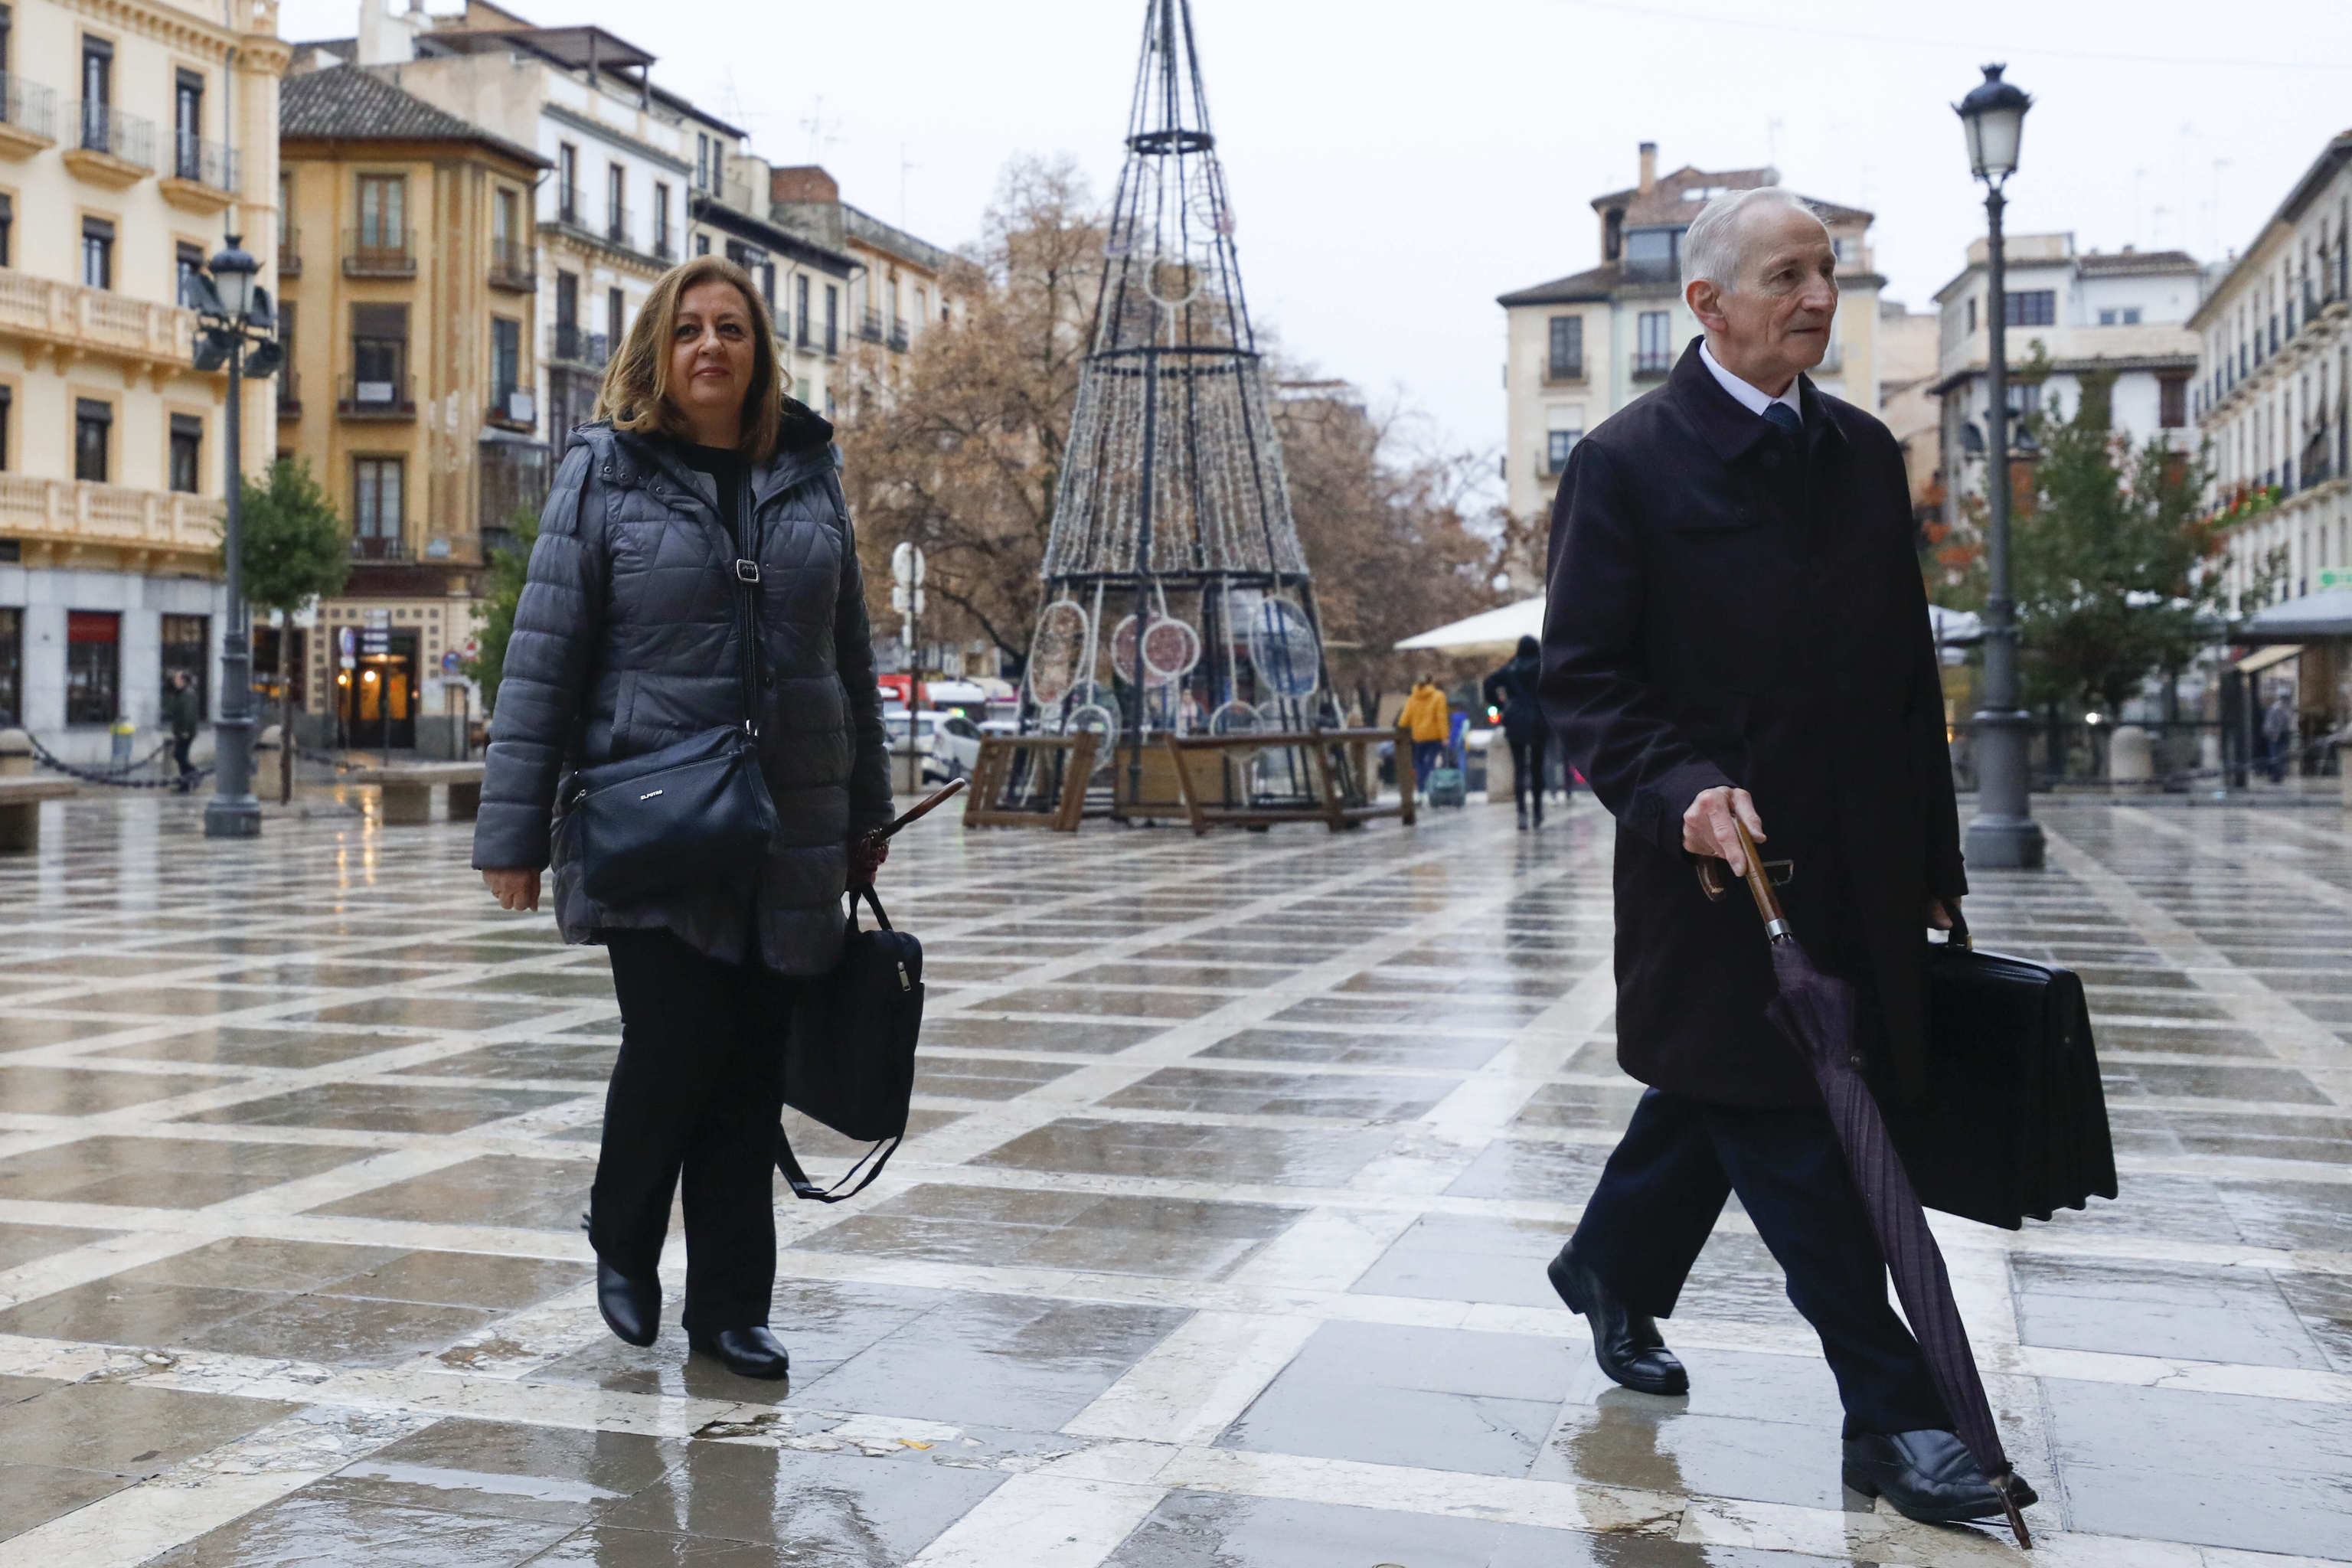 La ex directora de la Alhambra Mar Villafranca, junto a su abogado se dirigen a la Audiencia de Granada.